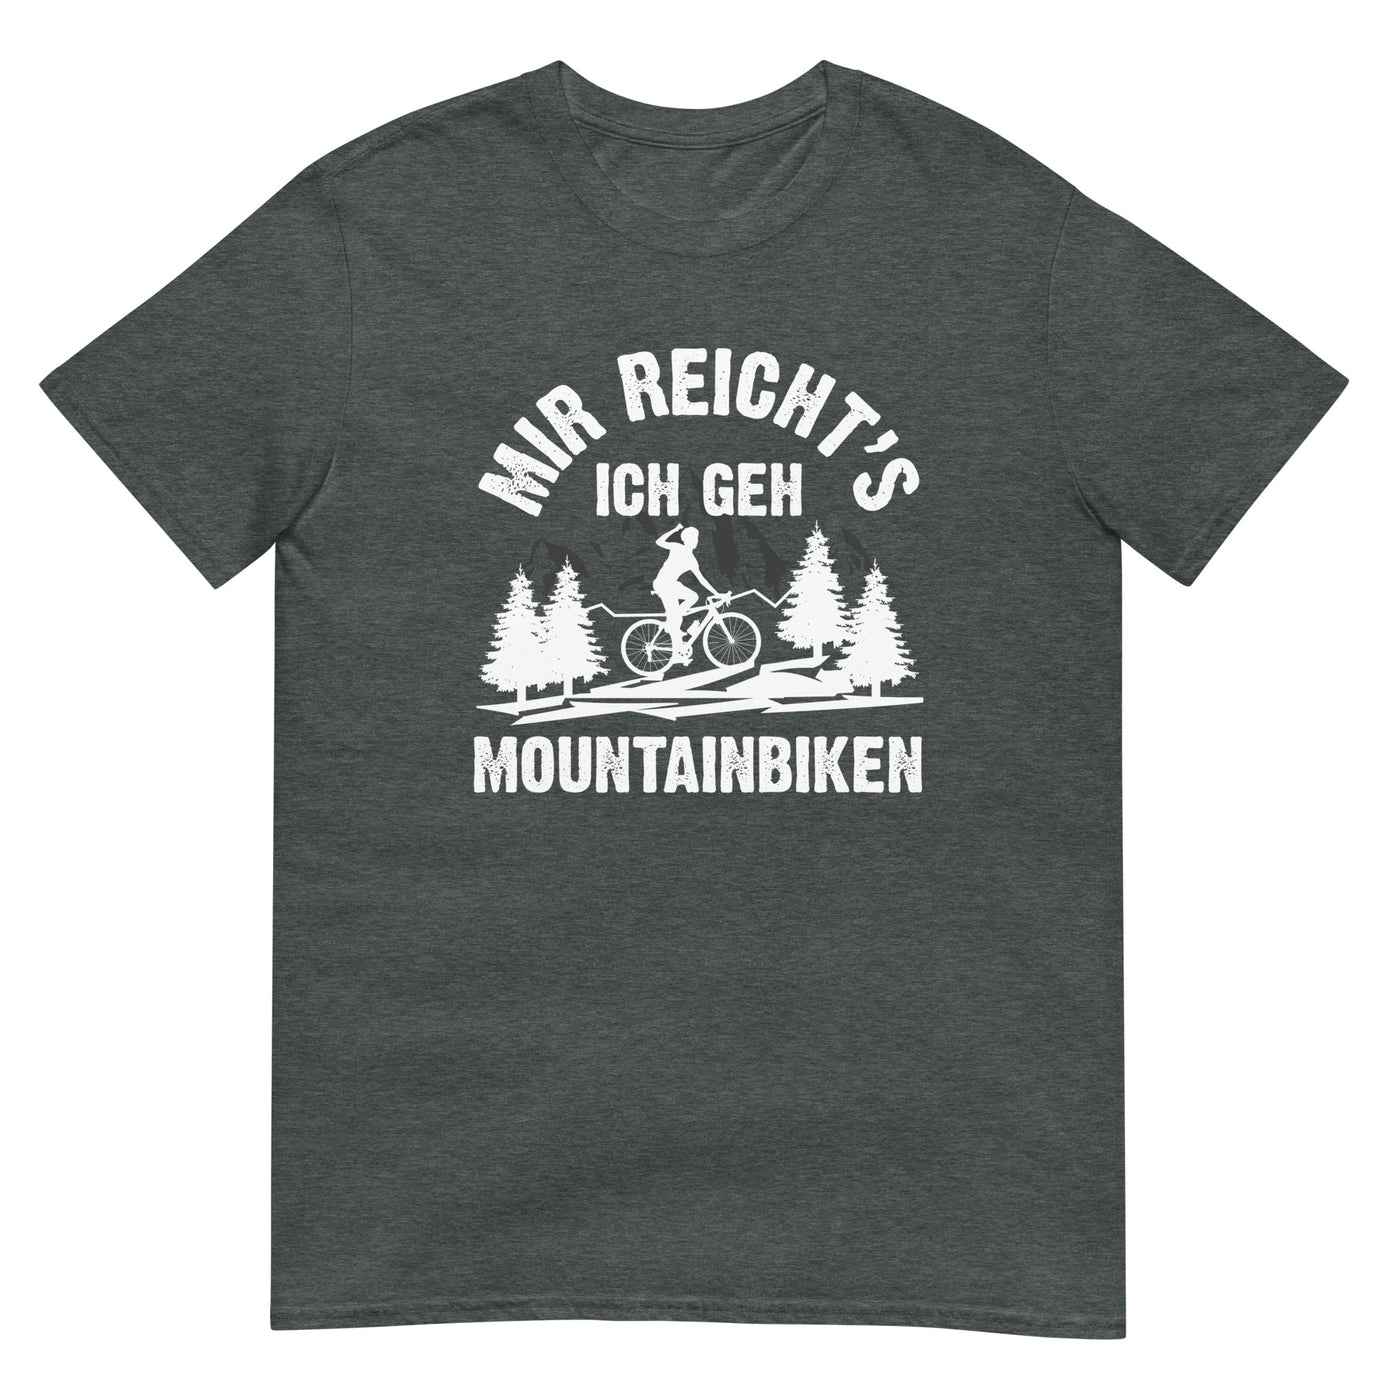 Mir reicht's ich geh mountainbiken - (M) - T-Shirt (Unisex) xxx yyy zzz Dark Heather